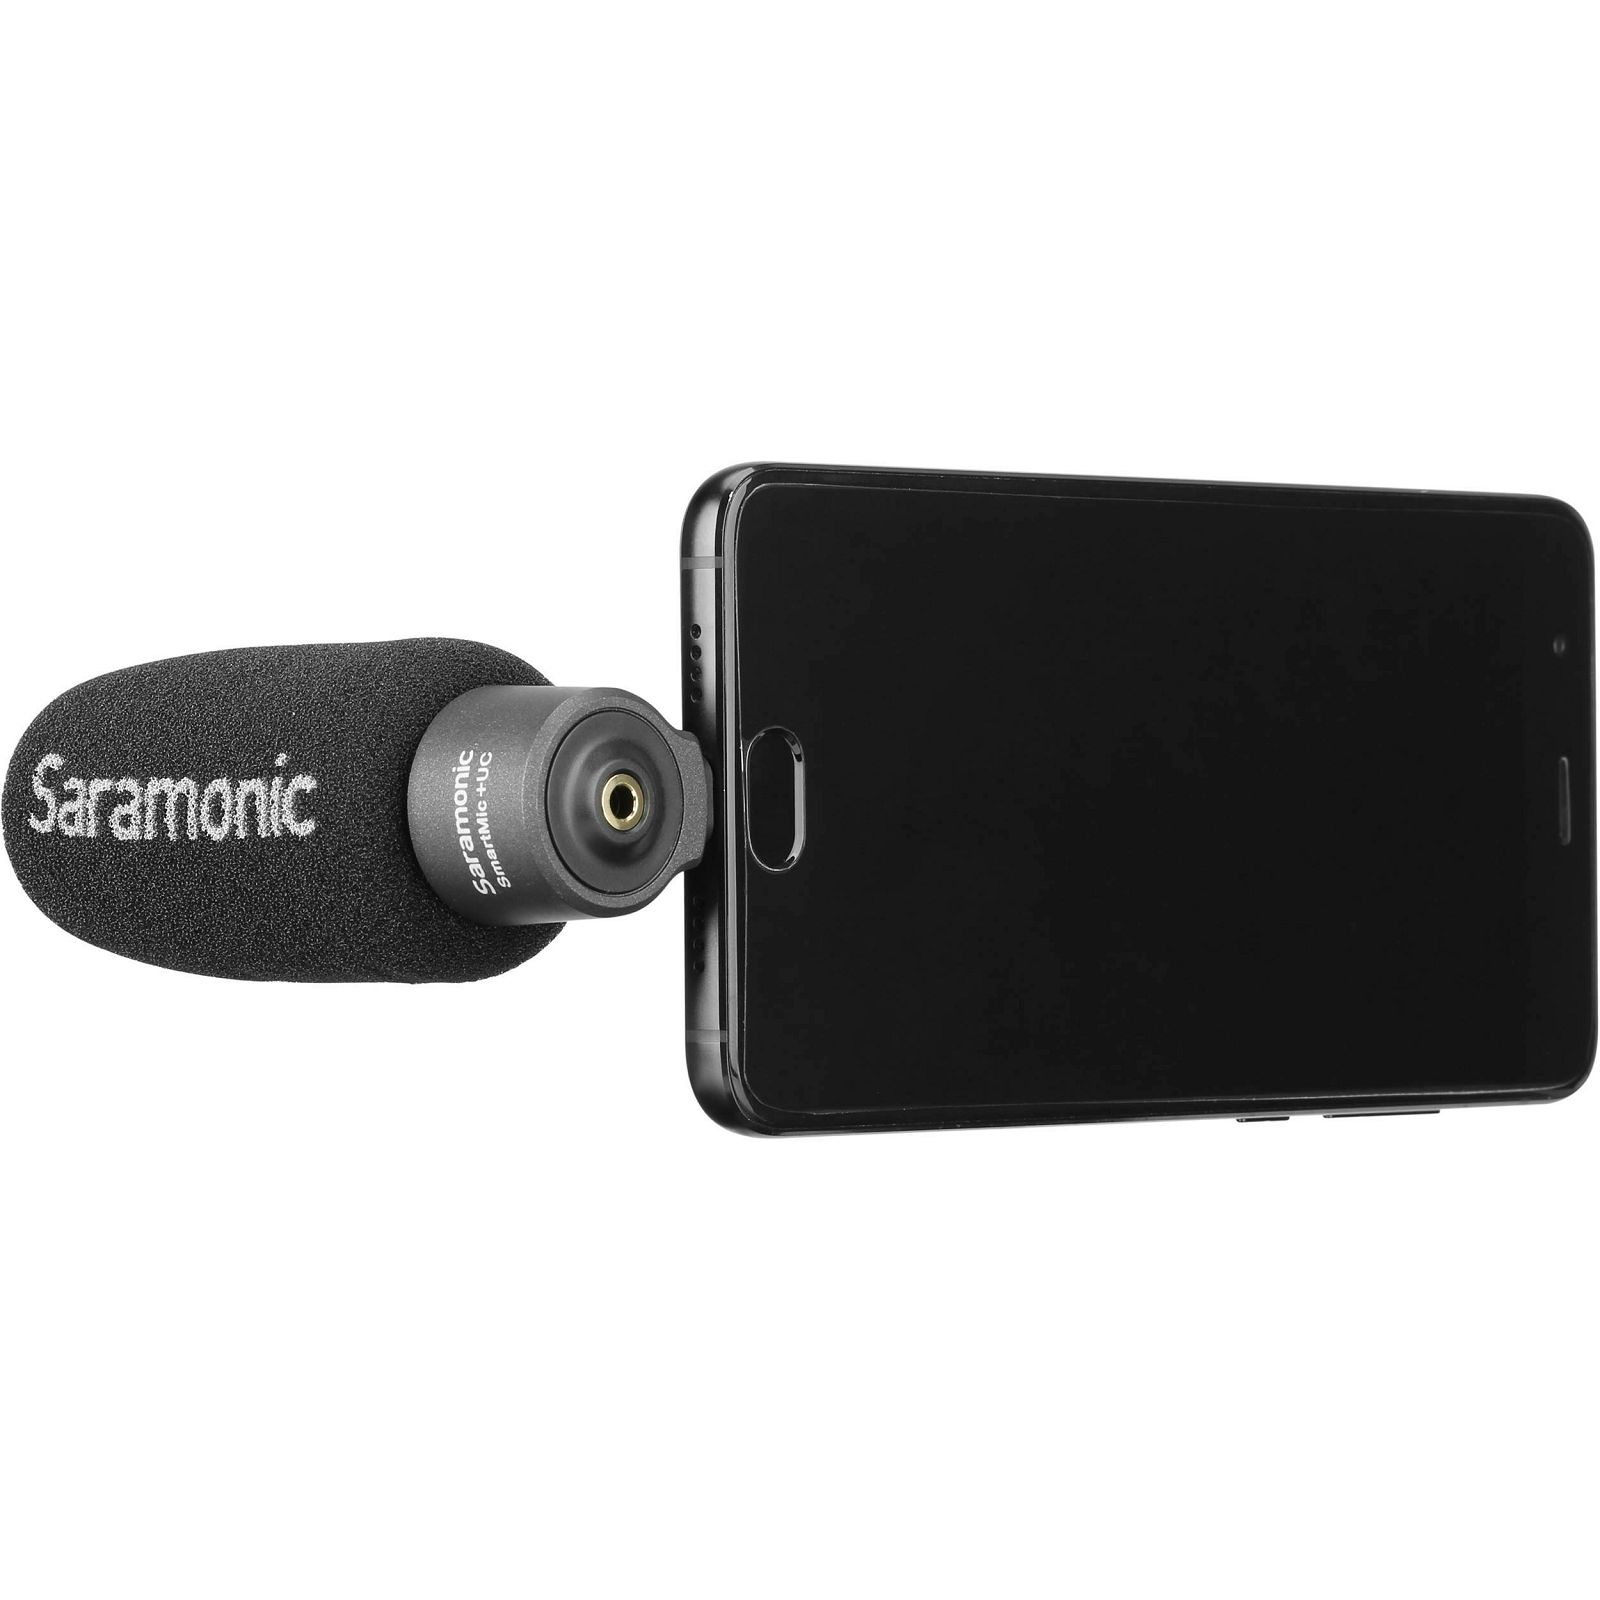 Saramonic SmartMic+ UC Lightweight smartphone Microphone mikrofon USB Type-C output priključak za smartphone